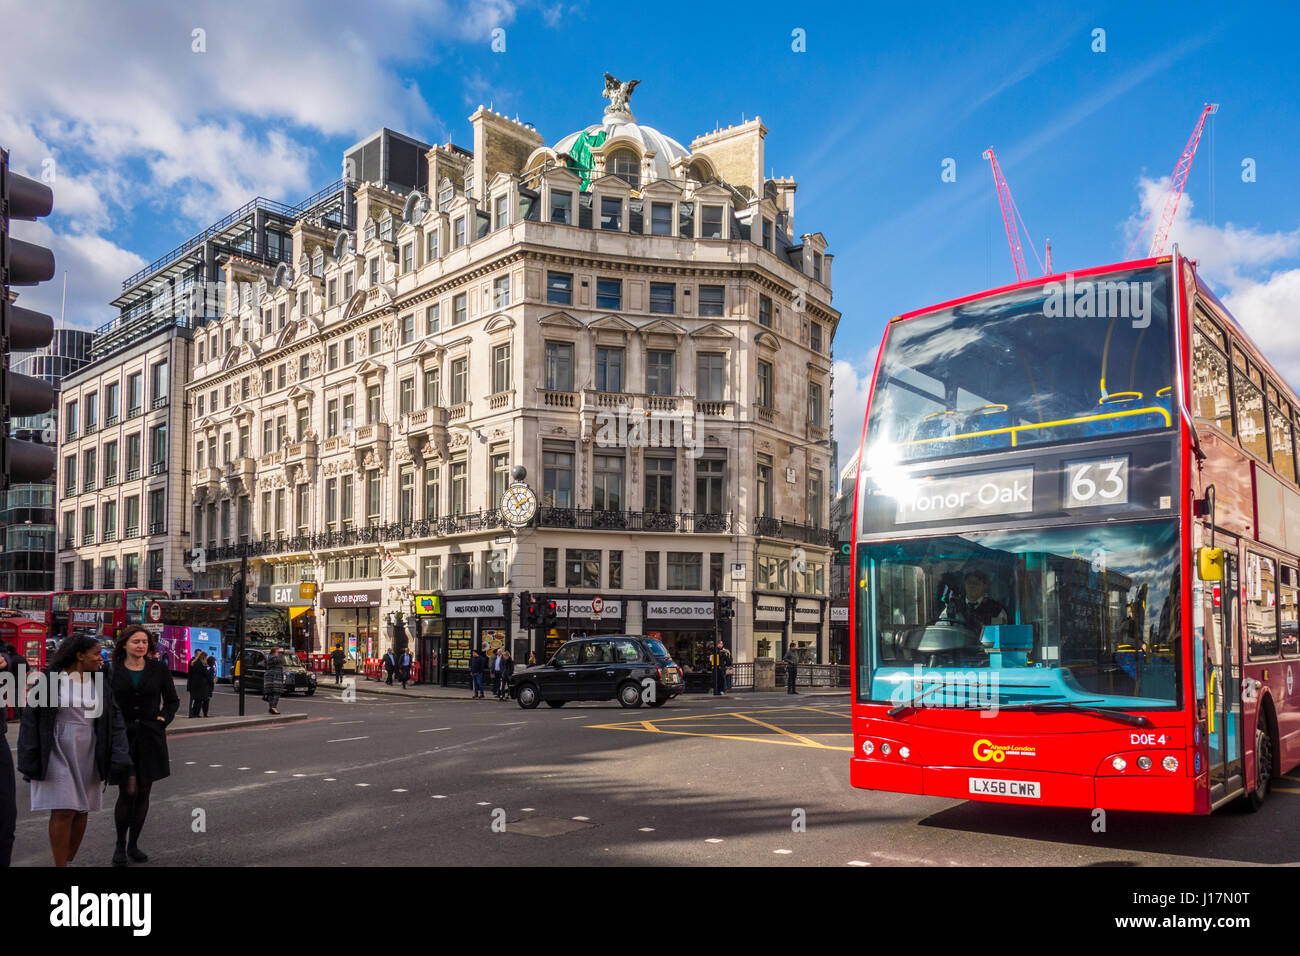 London bus rouge roulant à travers Ludgate Circus dans la ville de London, UK Banque D'Images